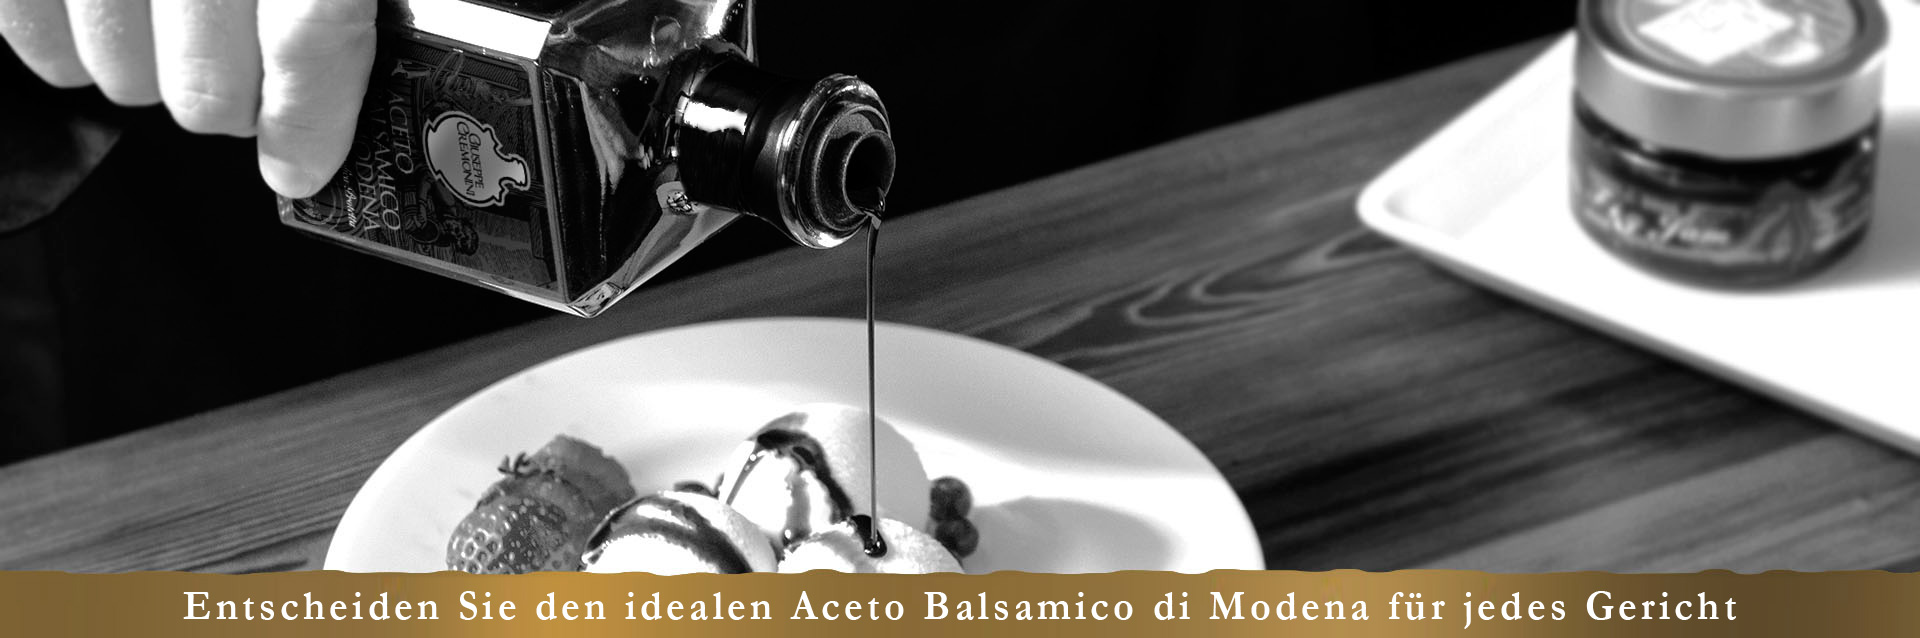 agc-banner-entscheiden-abm-acetaia-cremonini-aceto-balsamico-modena-balsamic-vinegar